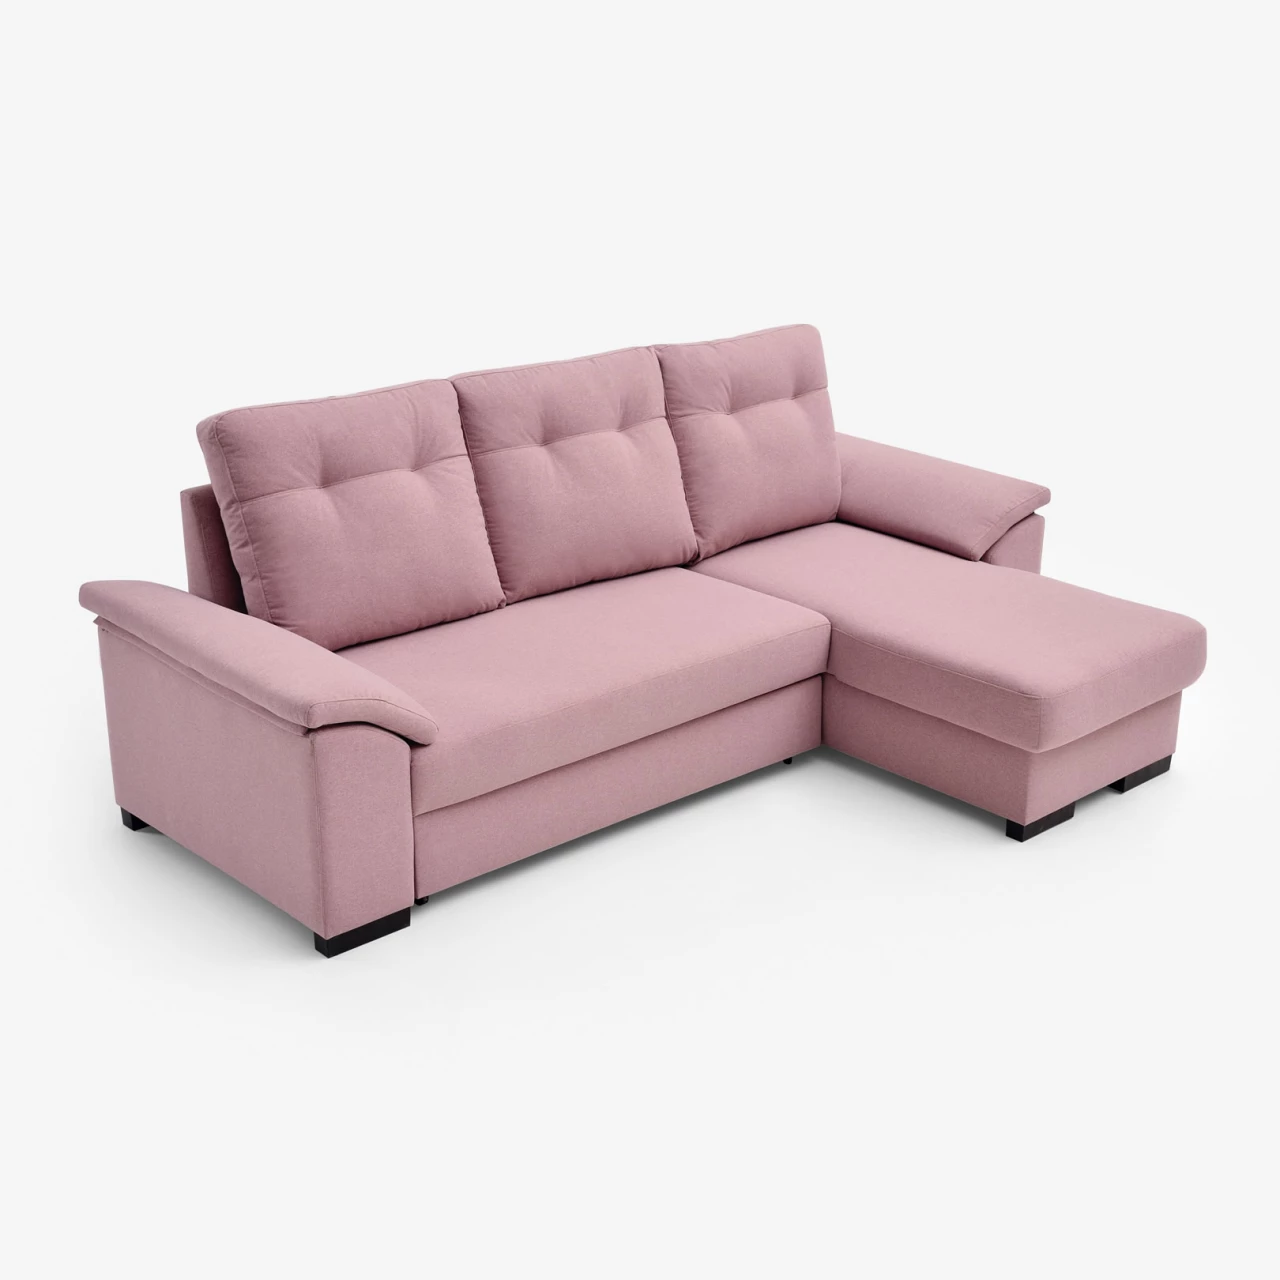 Sofa-cama rosa con mecanismo cigüeña (cerrado)